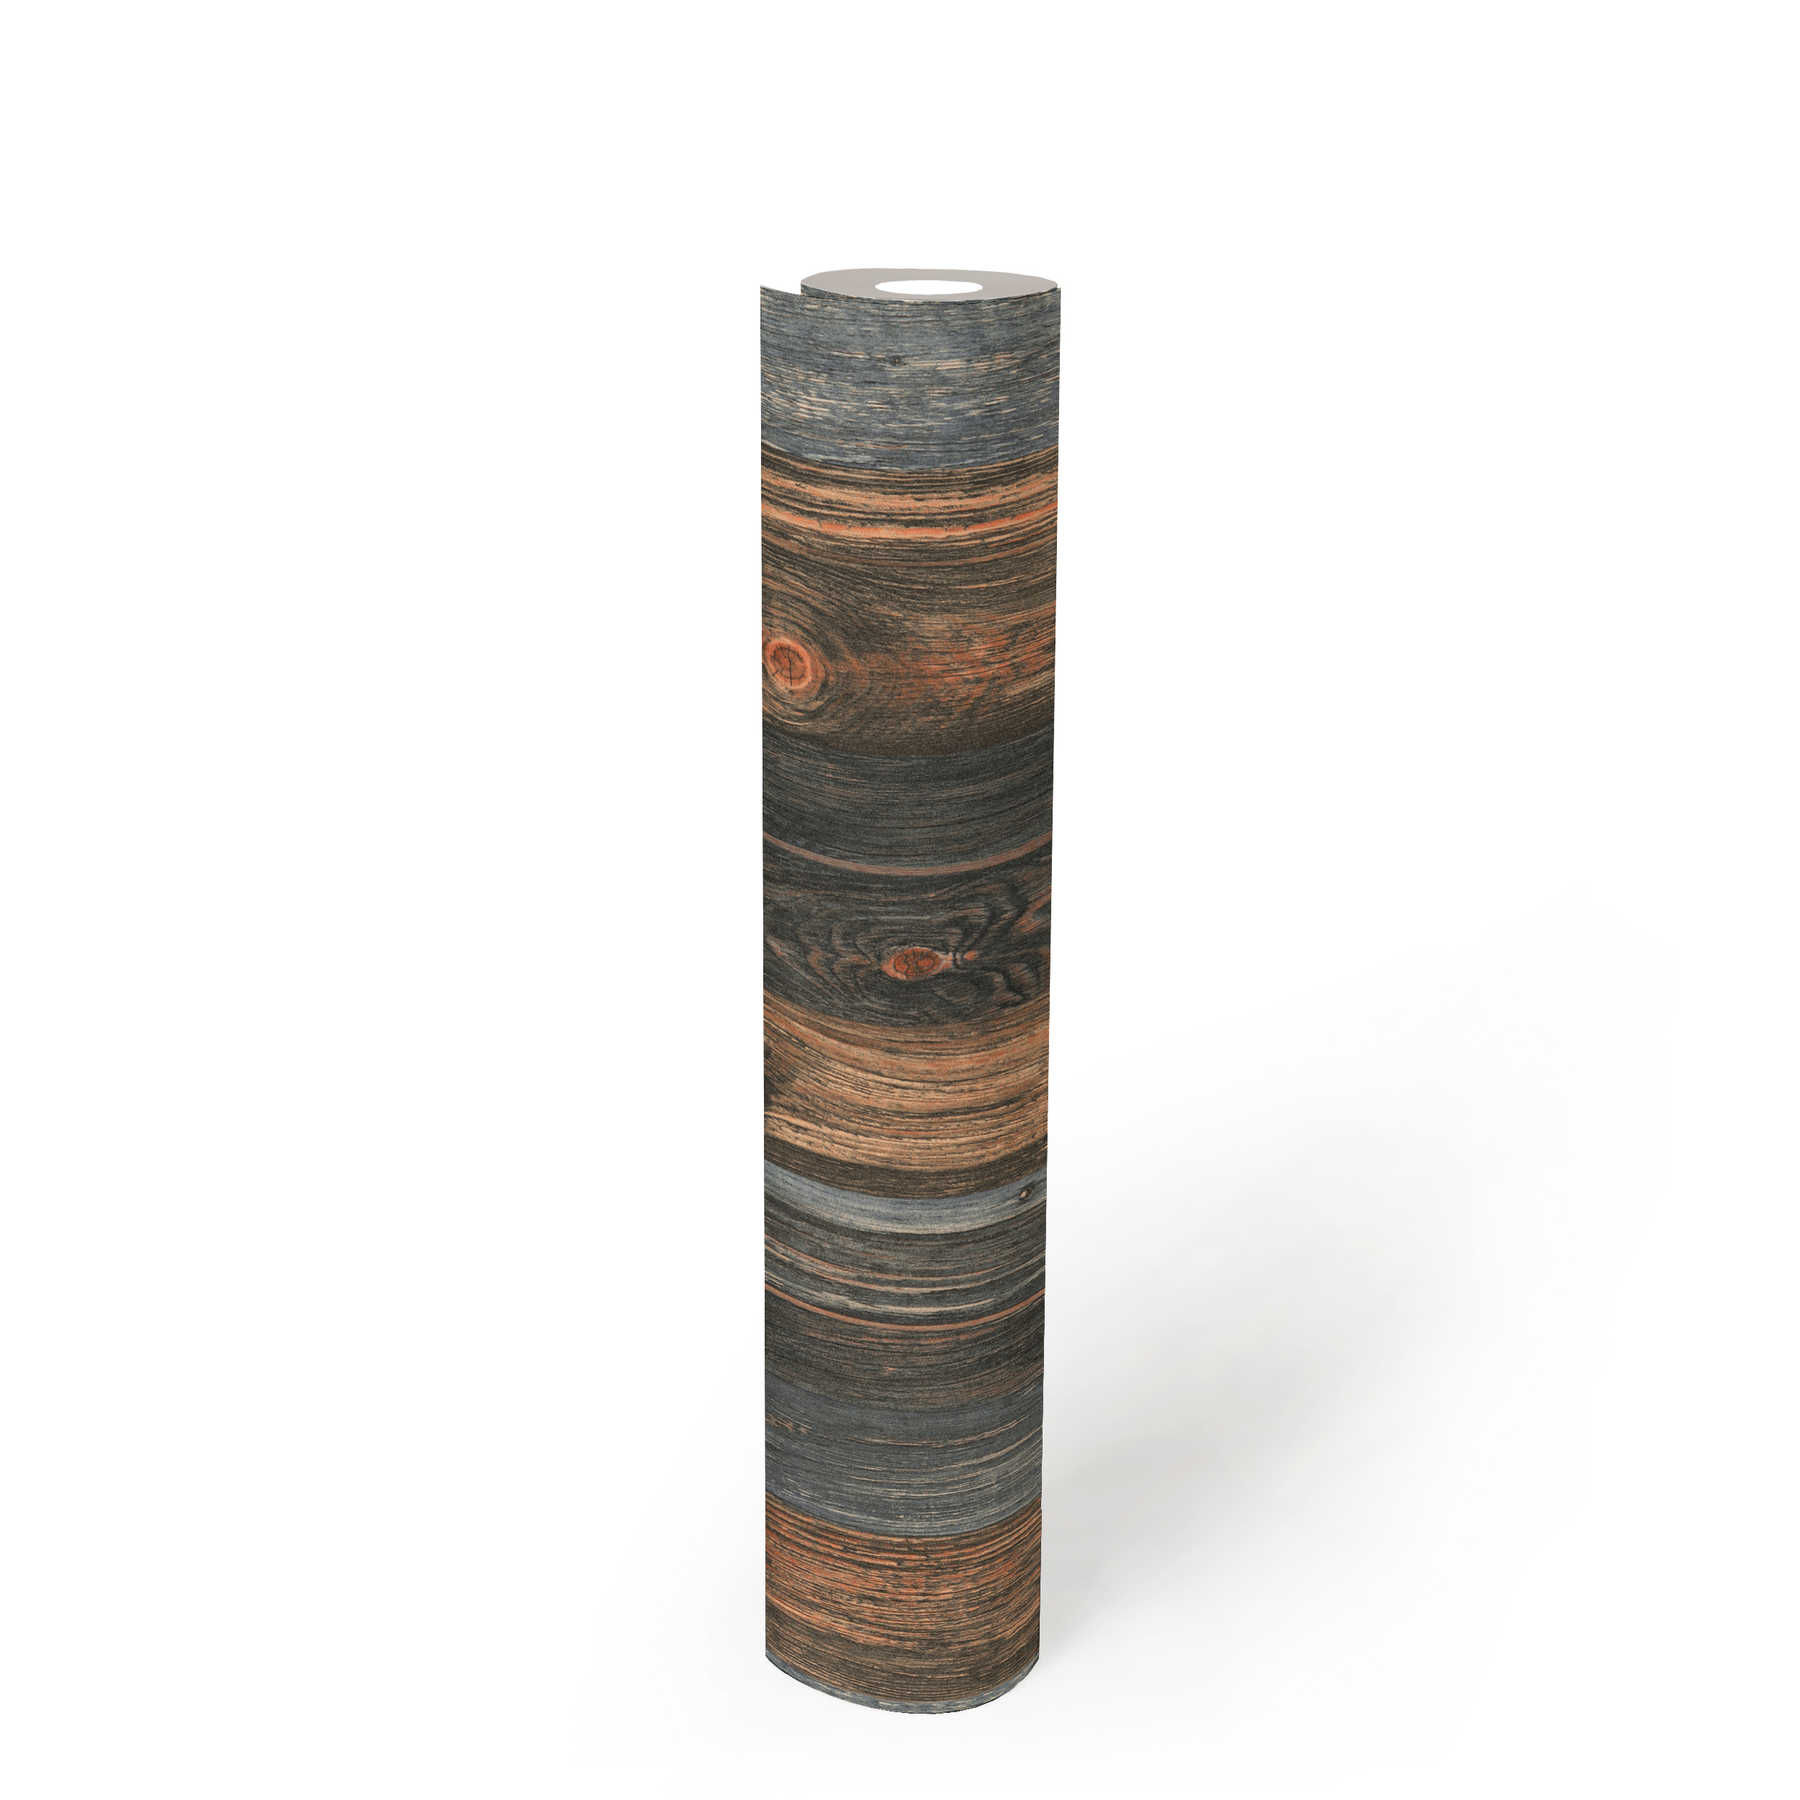             Houten behang met plankenmotief, houtstructuur en -nerf - bruin, grijs, beige
        